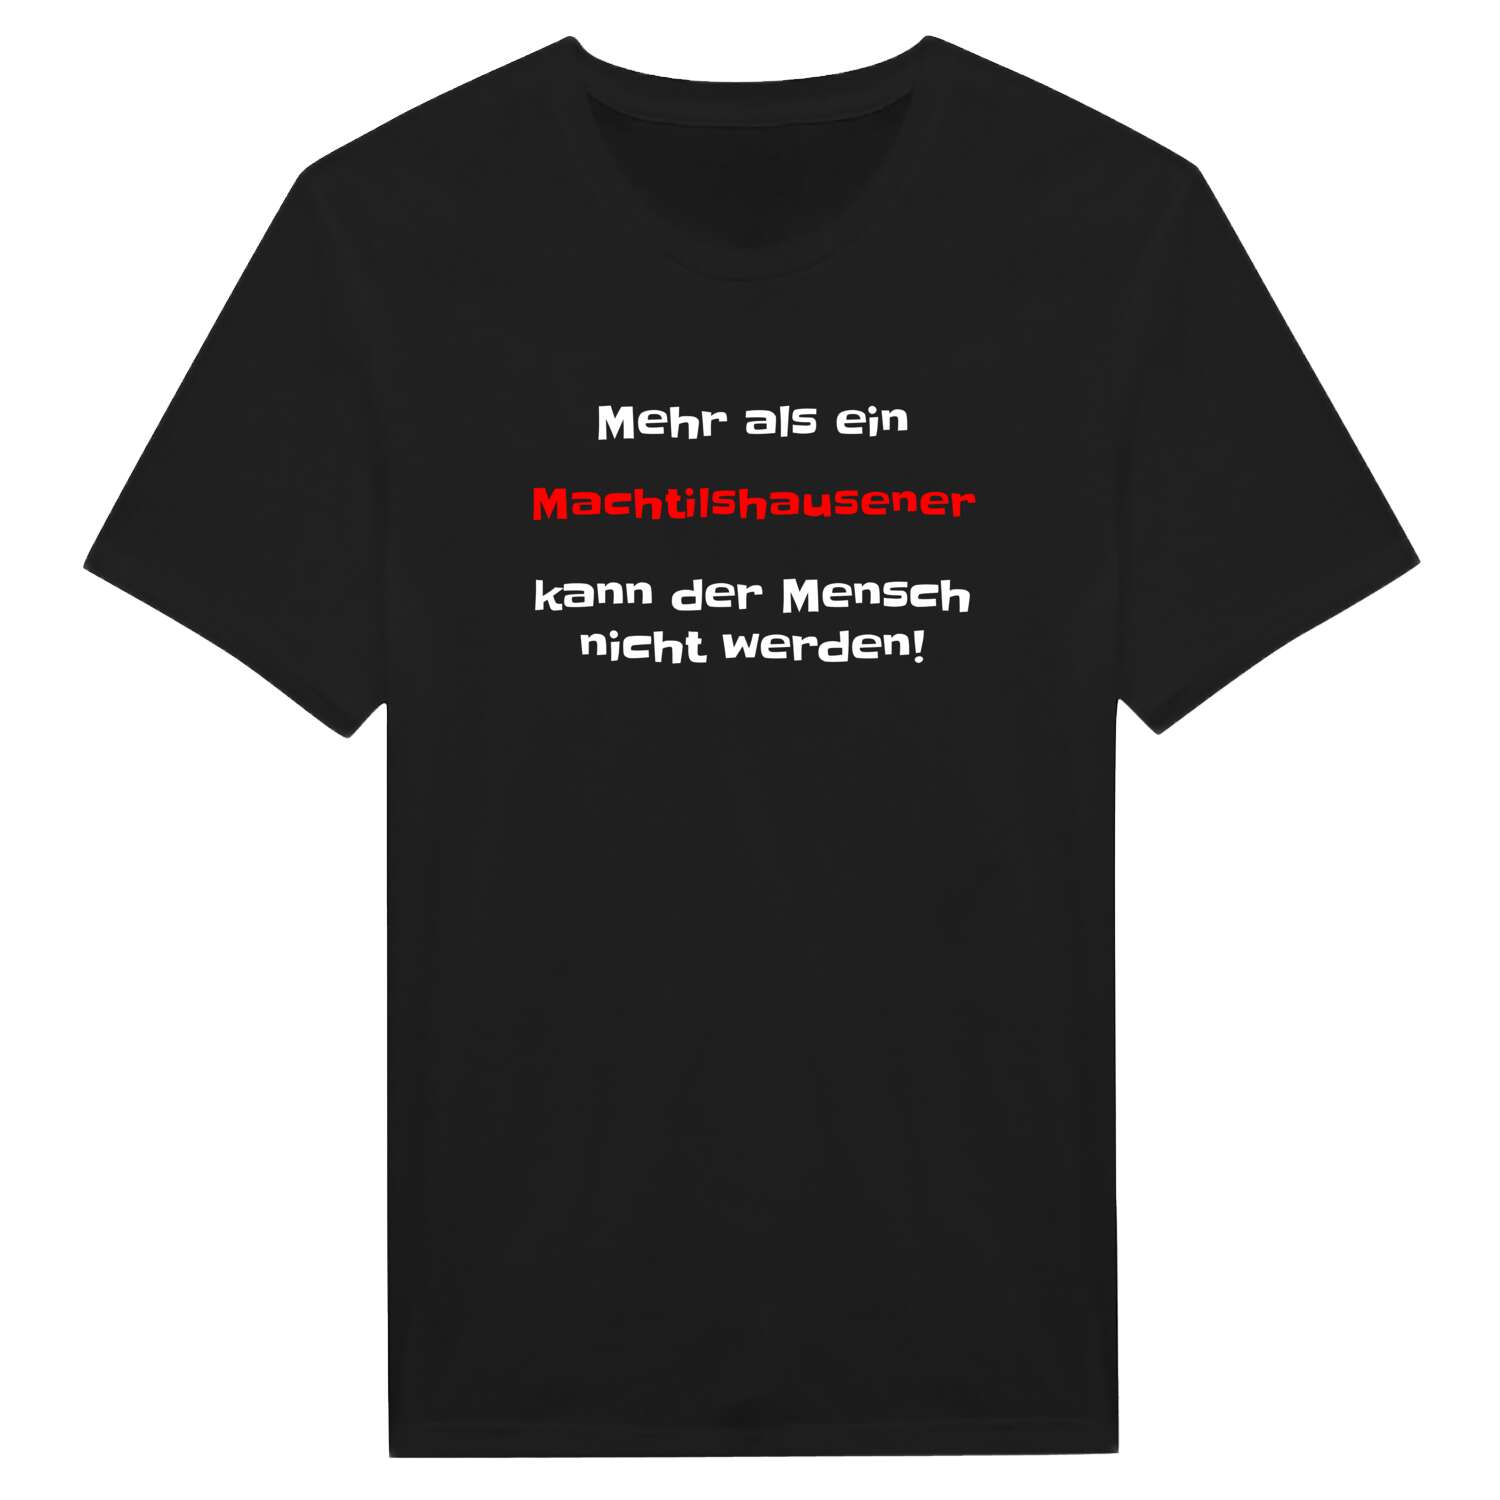 Machtilshausen T-Shirt »Mehr als ein«